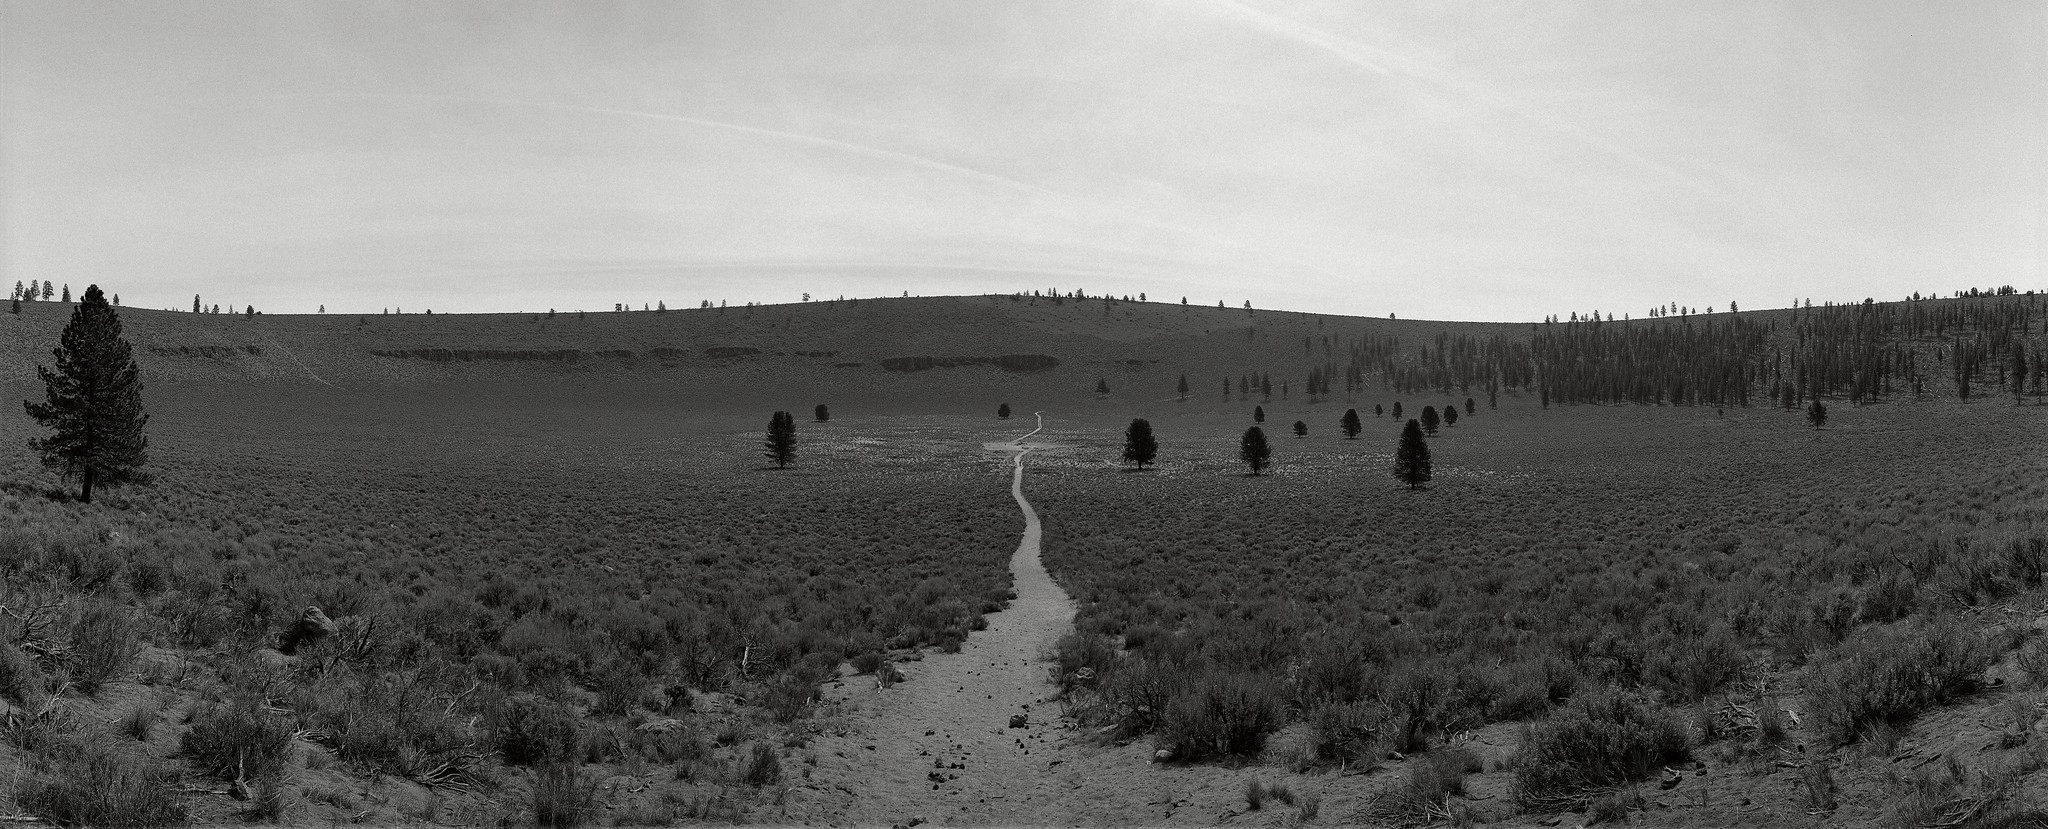 Path, Oregon | by austin granger